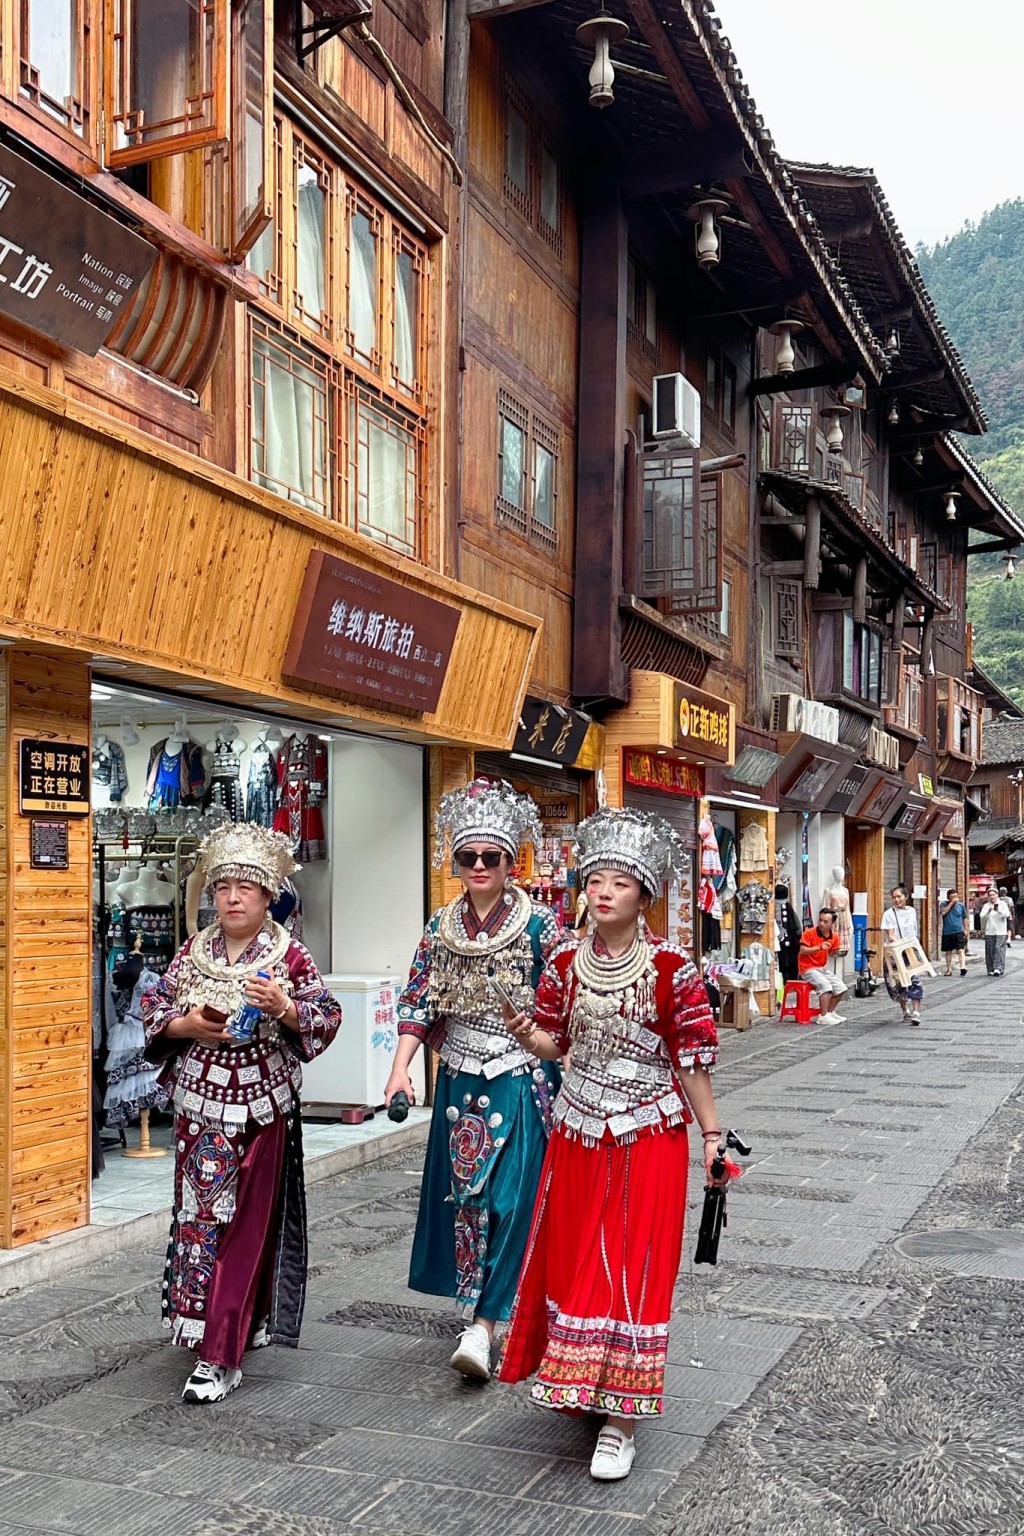 樓主：租民族服飾來穿戴，走到街上體現一下少數民族風韻的遊客，隨處可見。圖片授權David Cheng